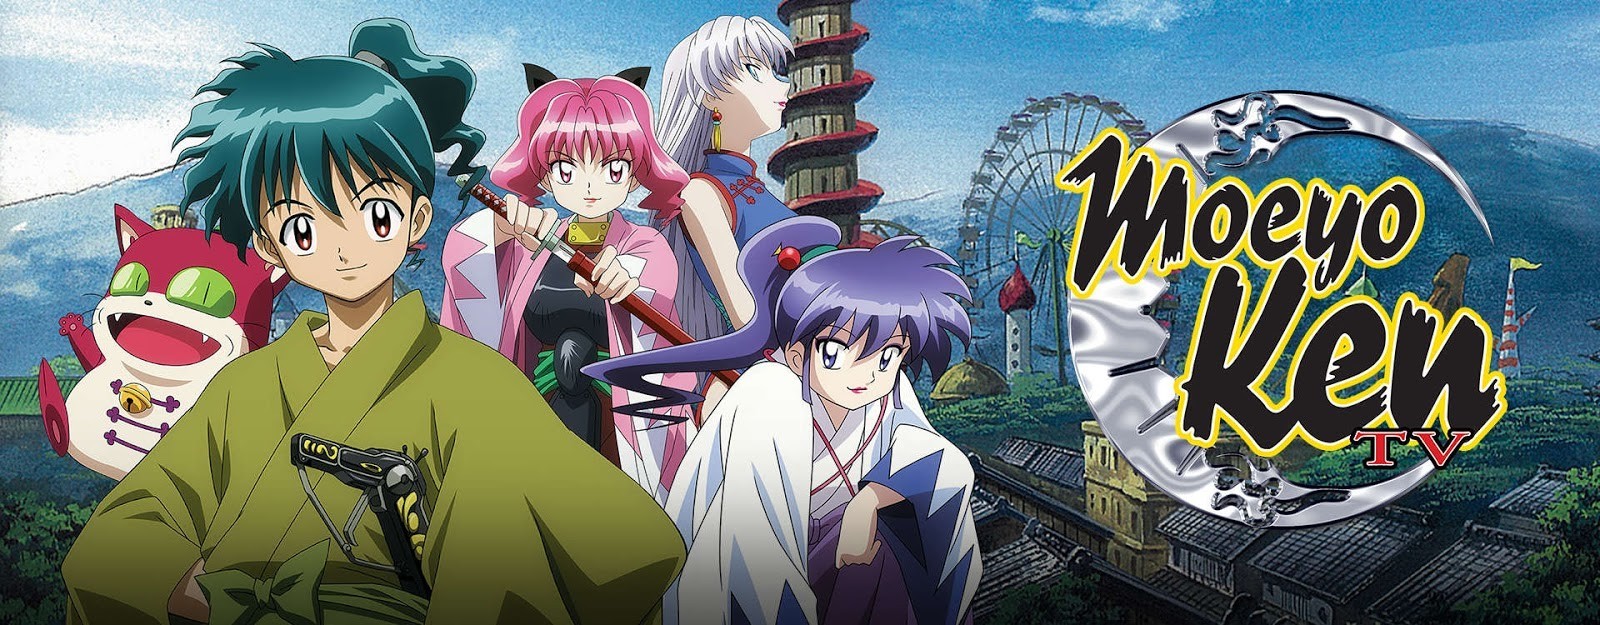 Rurouni Kenshin: Meiji Kenkaku Romantan - Shin Kyoto Hen - Anime - AniDB